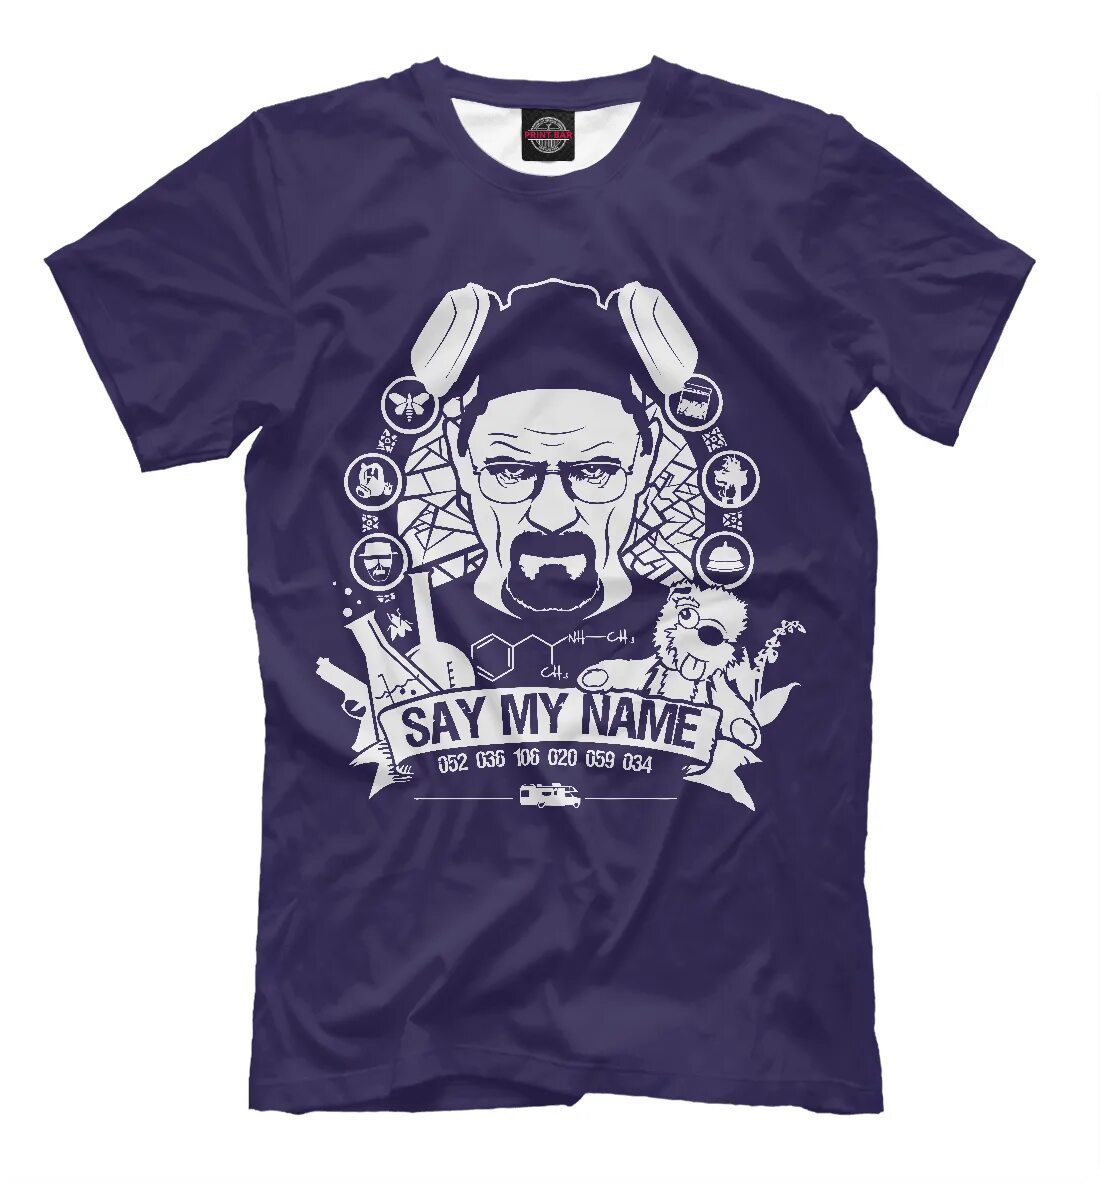 Say may name. Футболка say my name. ENESAY футболки. Walter White say my name. Now say my name.